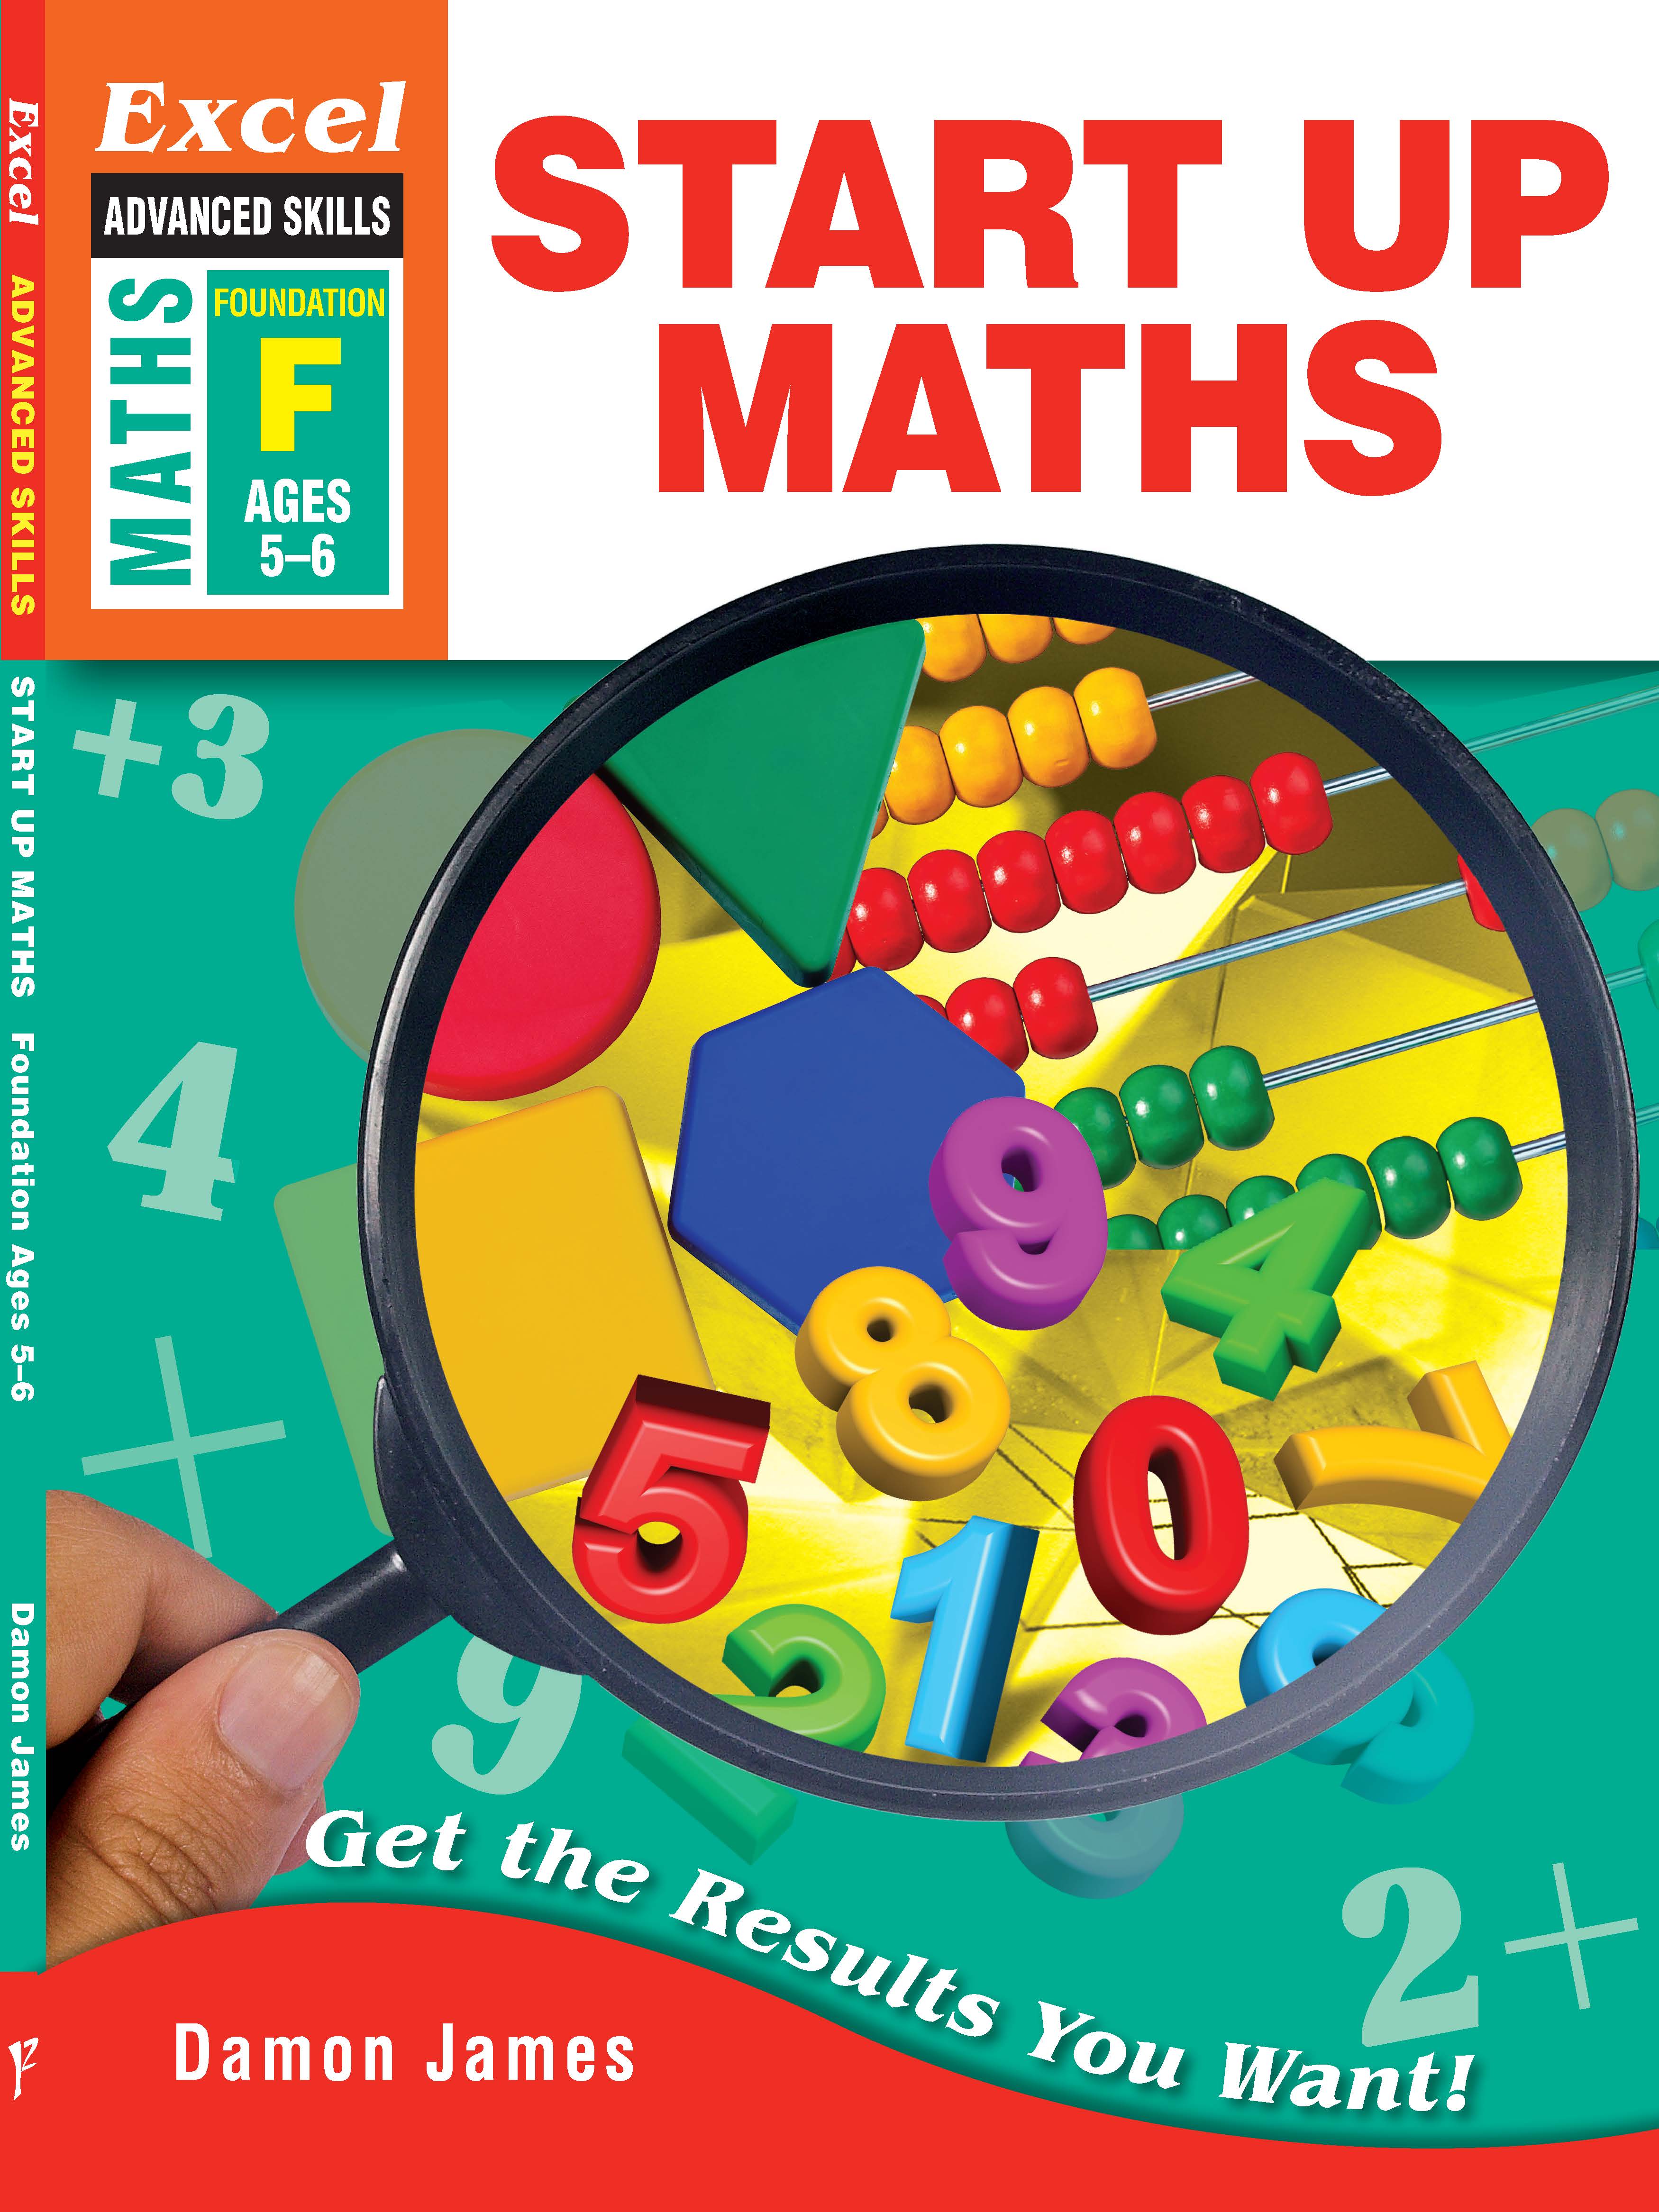 Picture of Excel Advanced Skills Workbook: Start Up Maths Kindergarten/Foundation